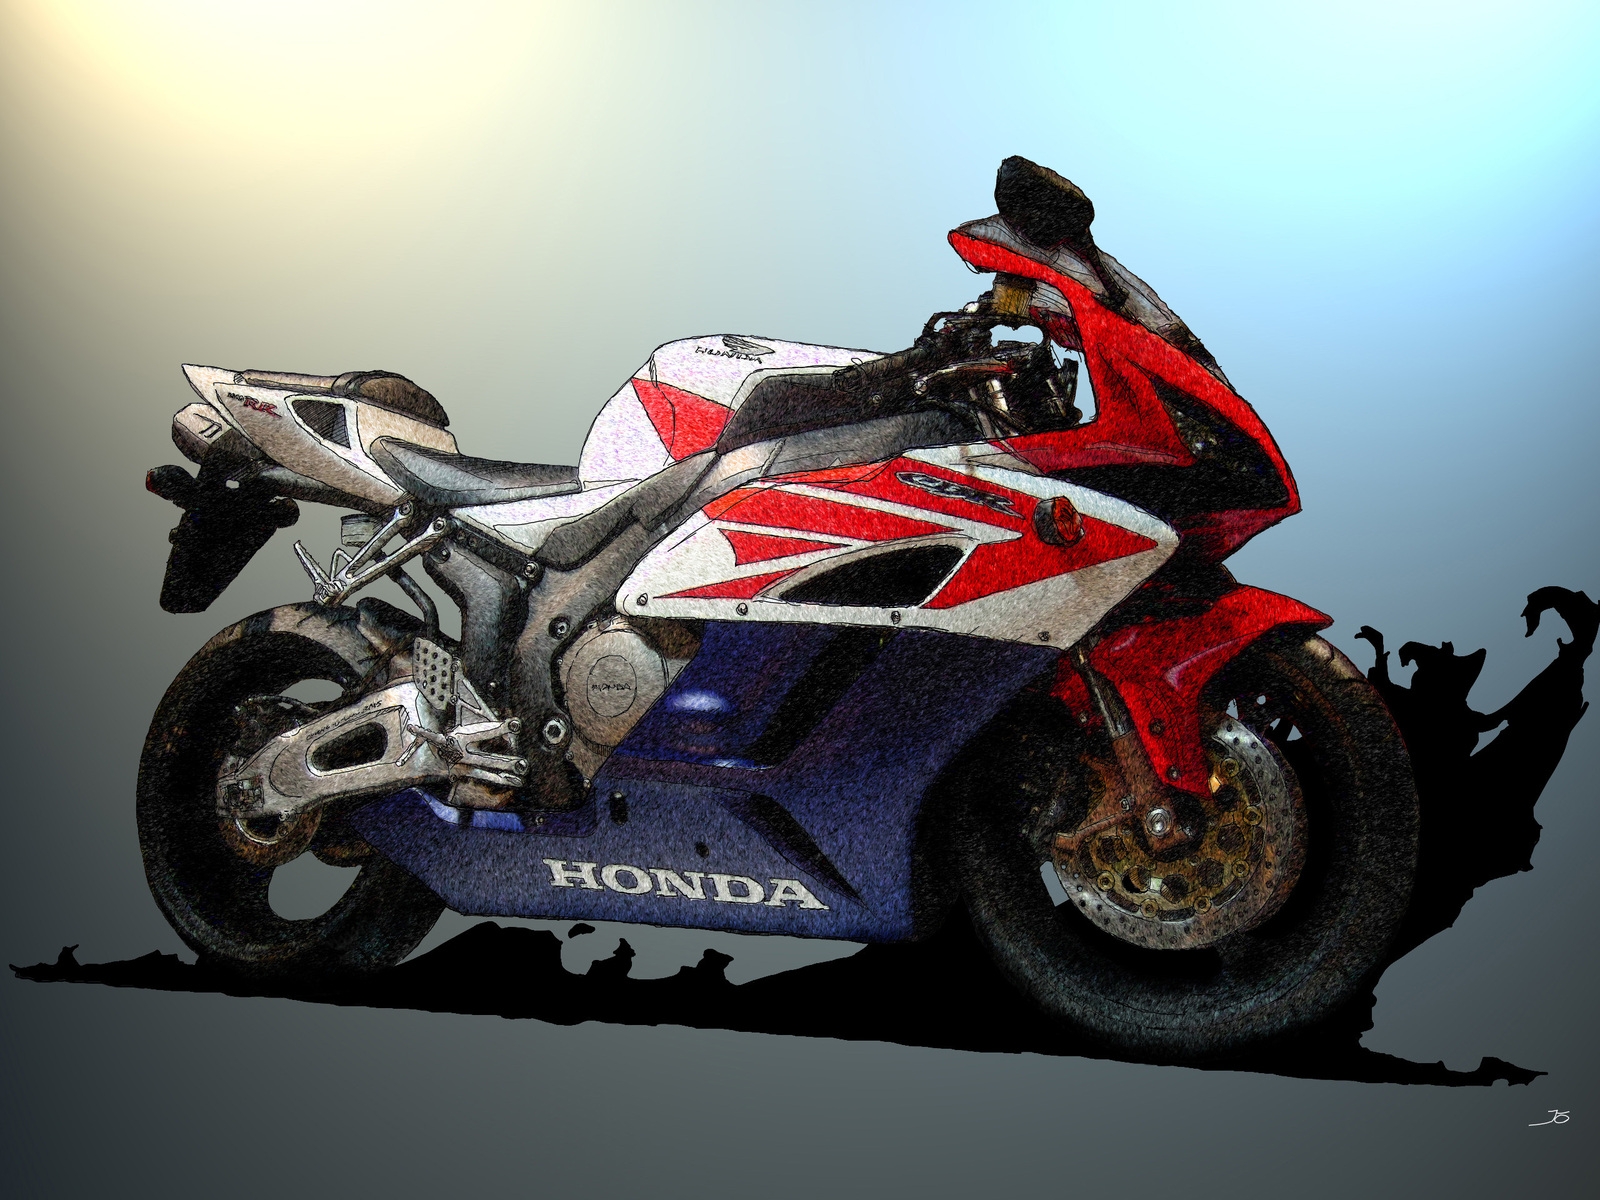 Honda CBR Sketch for 1600 x 1200 resolution